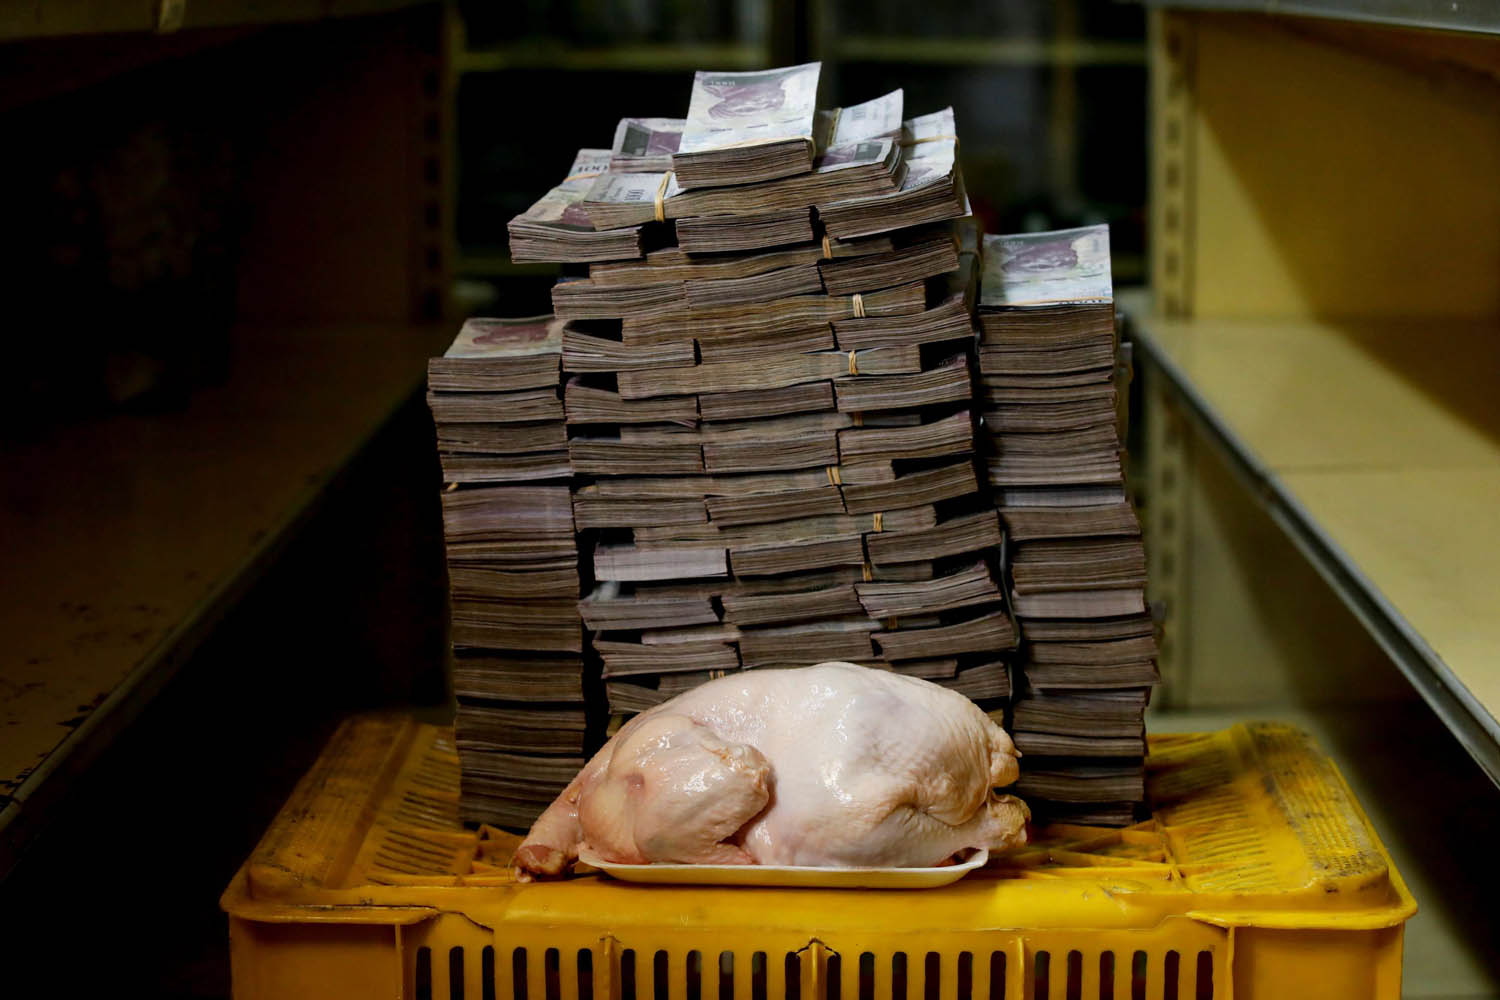 دجاجة وكومة من العملة الفنزويلية القديمة تشرح مشكلة التضخم